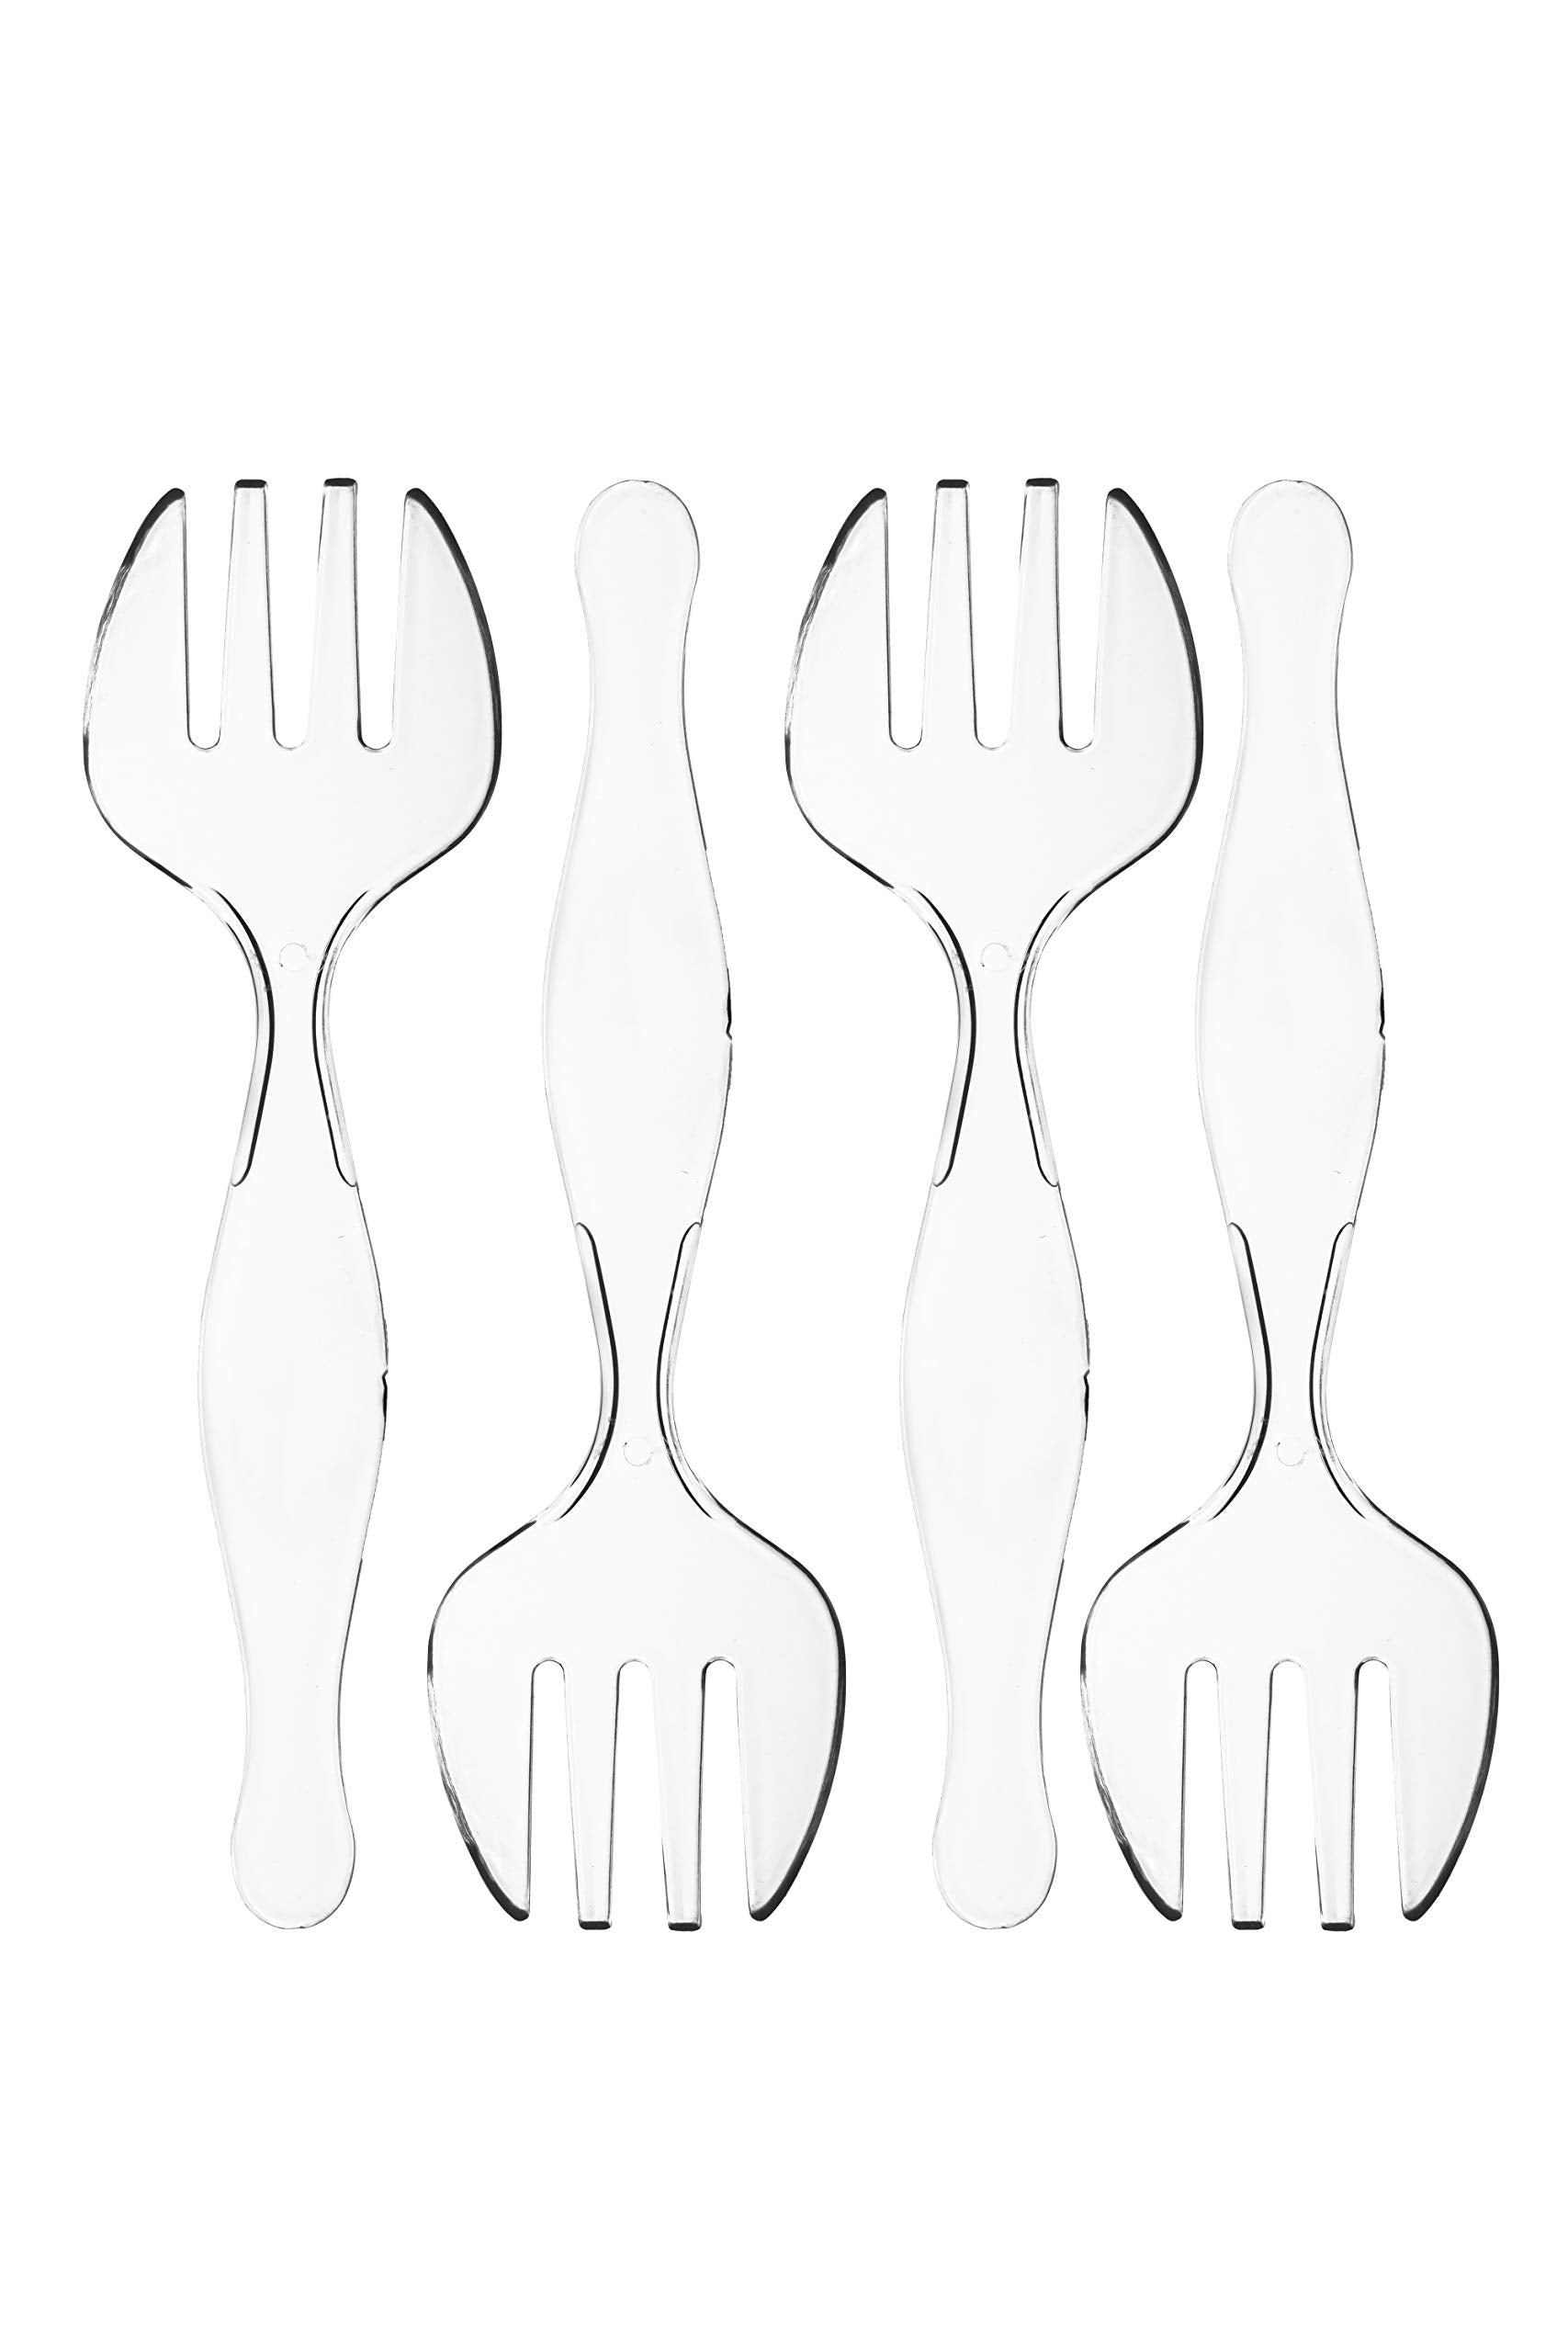 Clear Plastic Serving Forks | 4 Pack